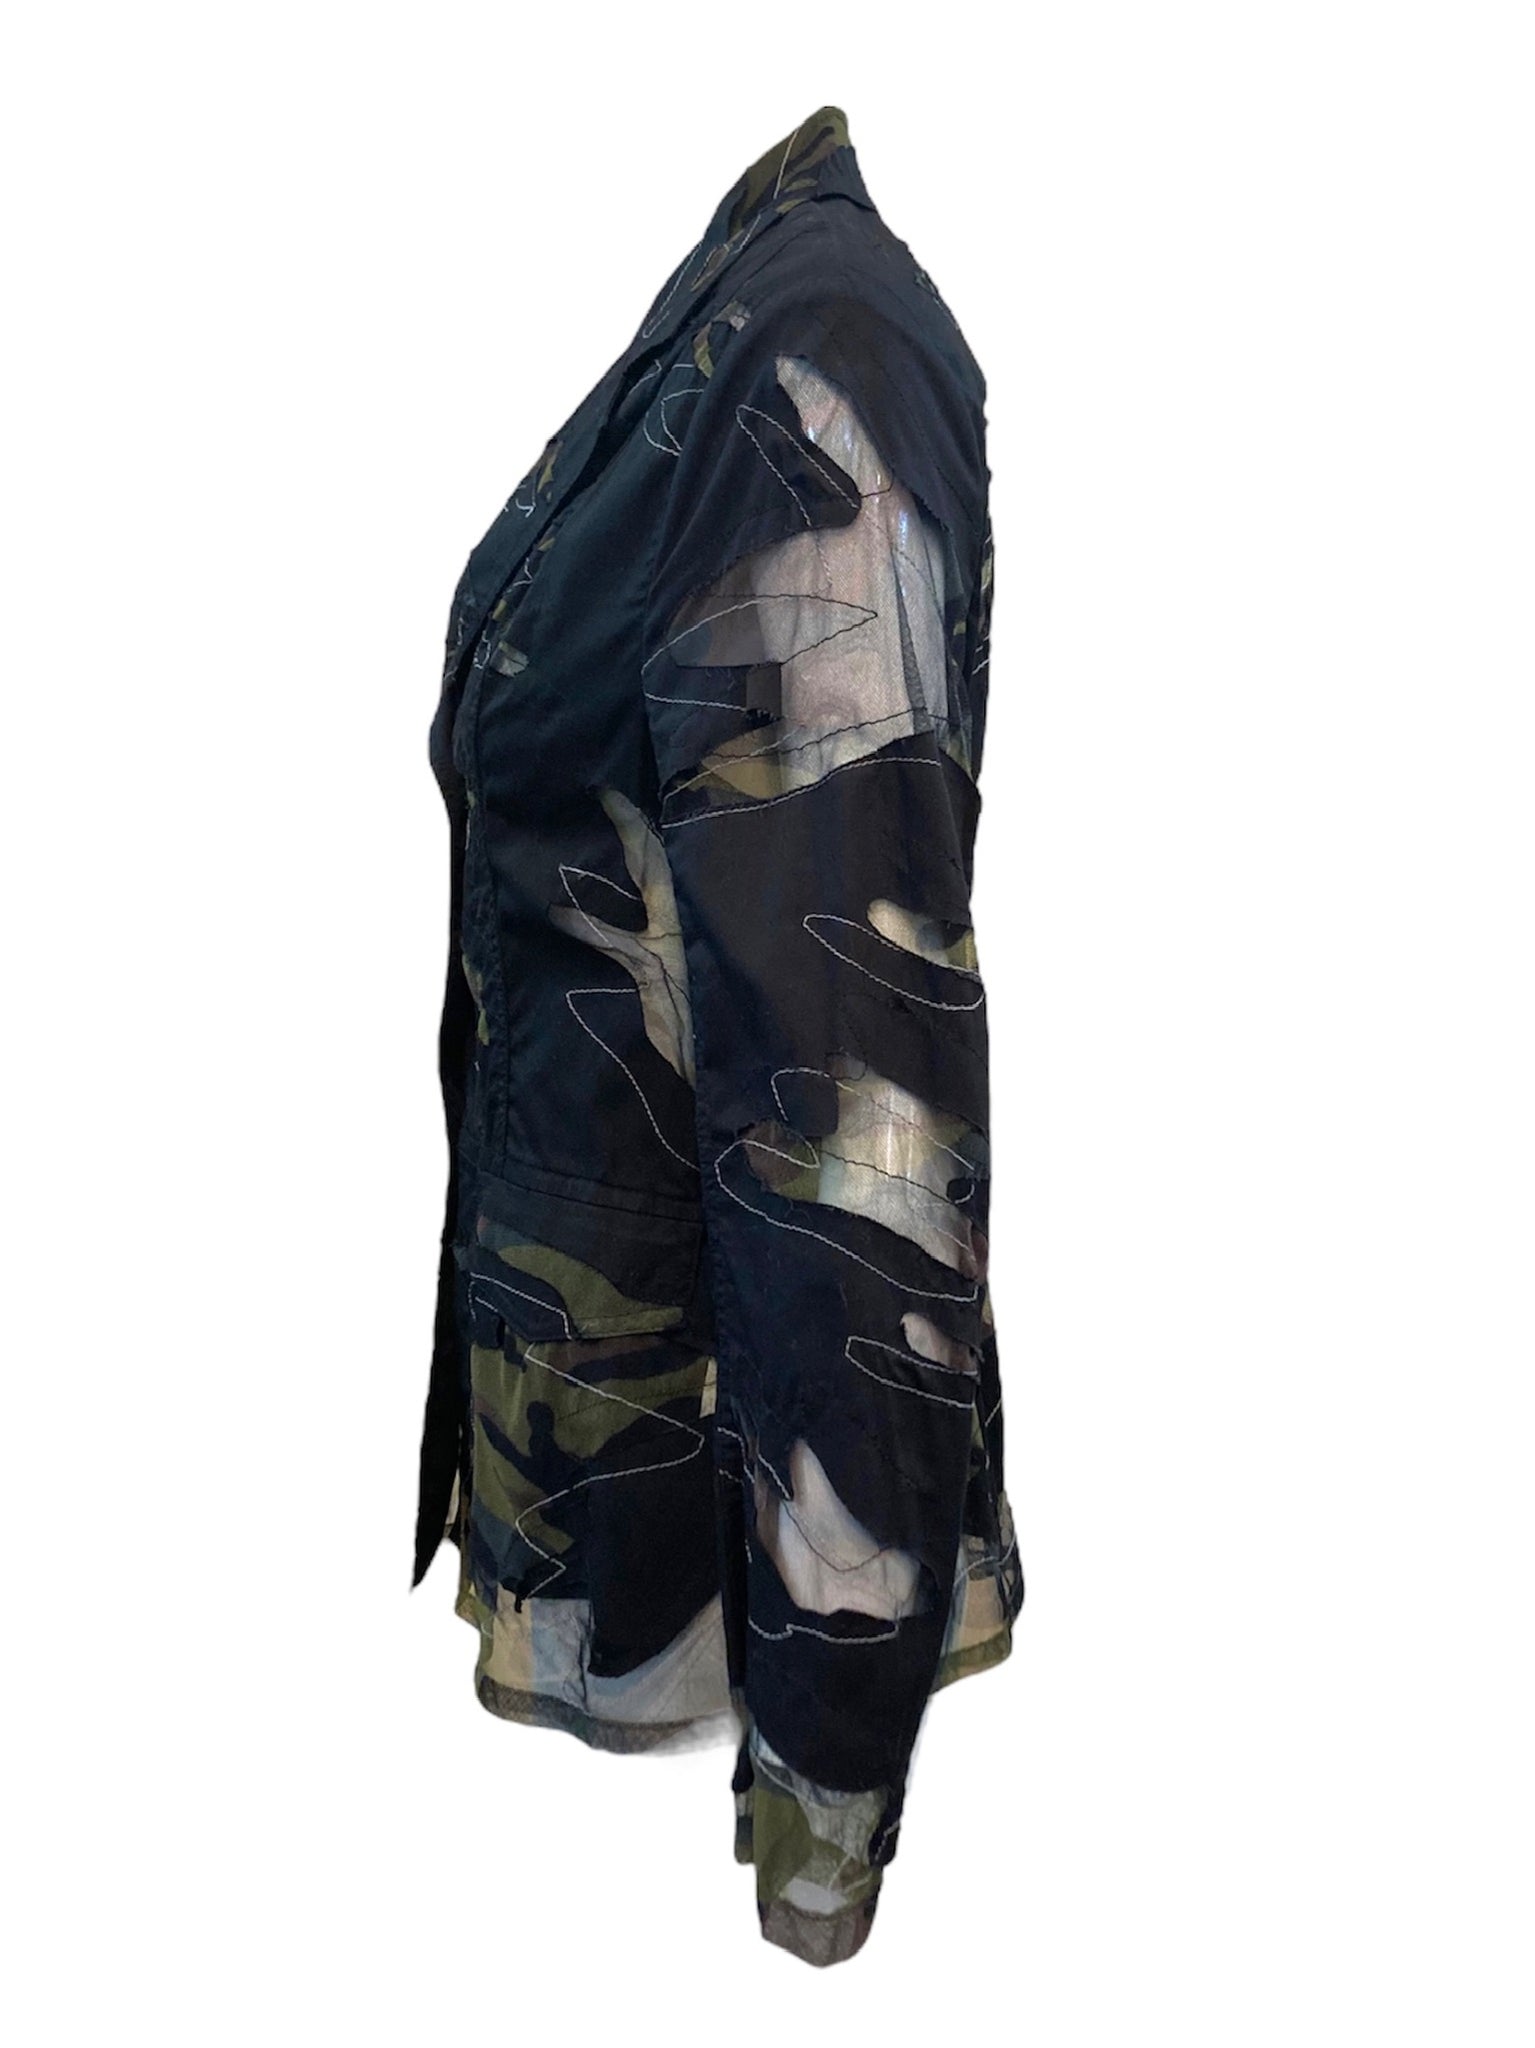 Yoshiki Hishinuma 90s Camouflage Blazer Cut Jacket SIDE 2 of 5